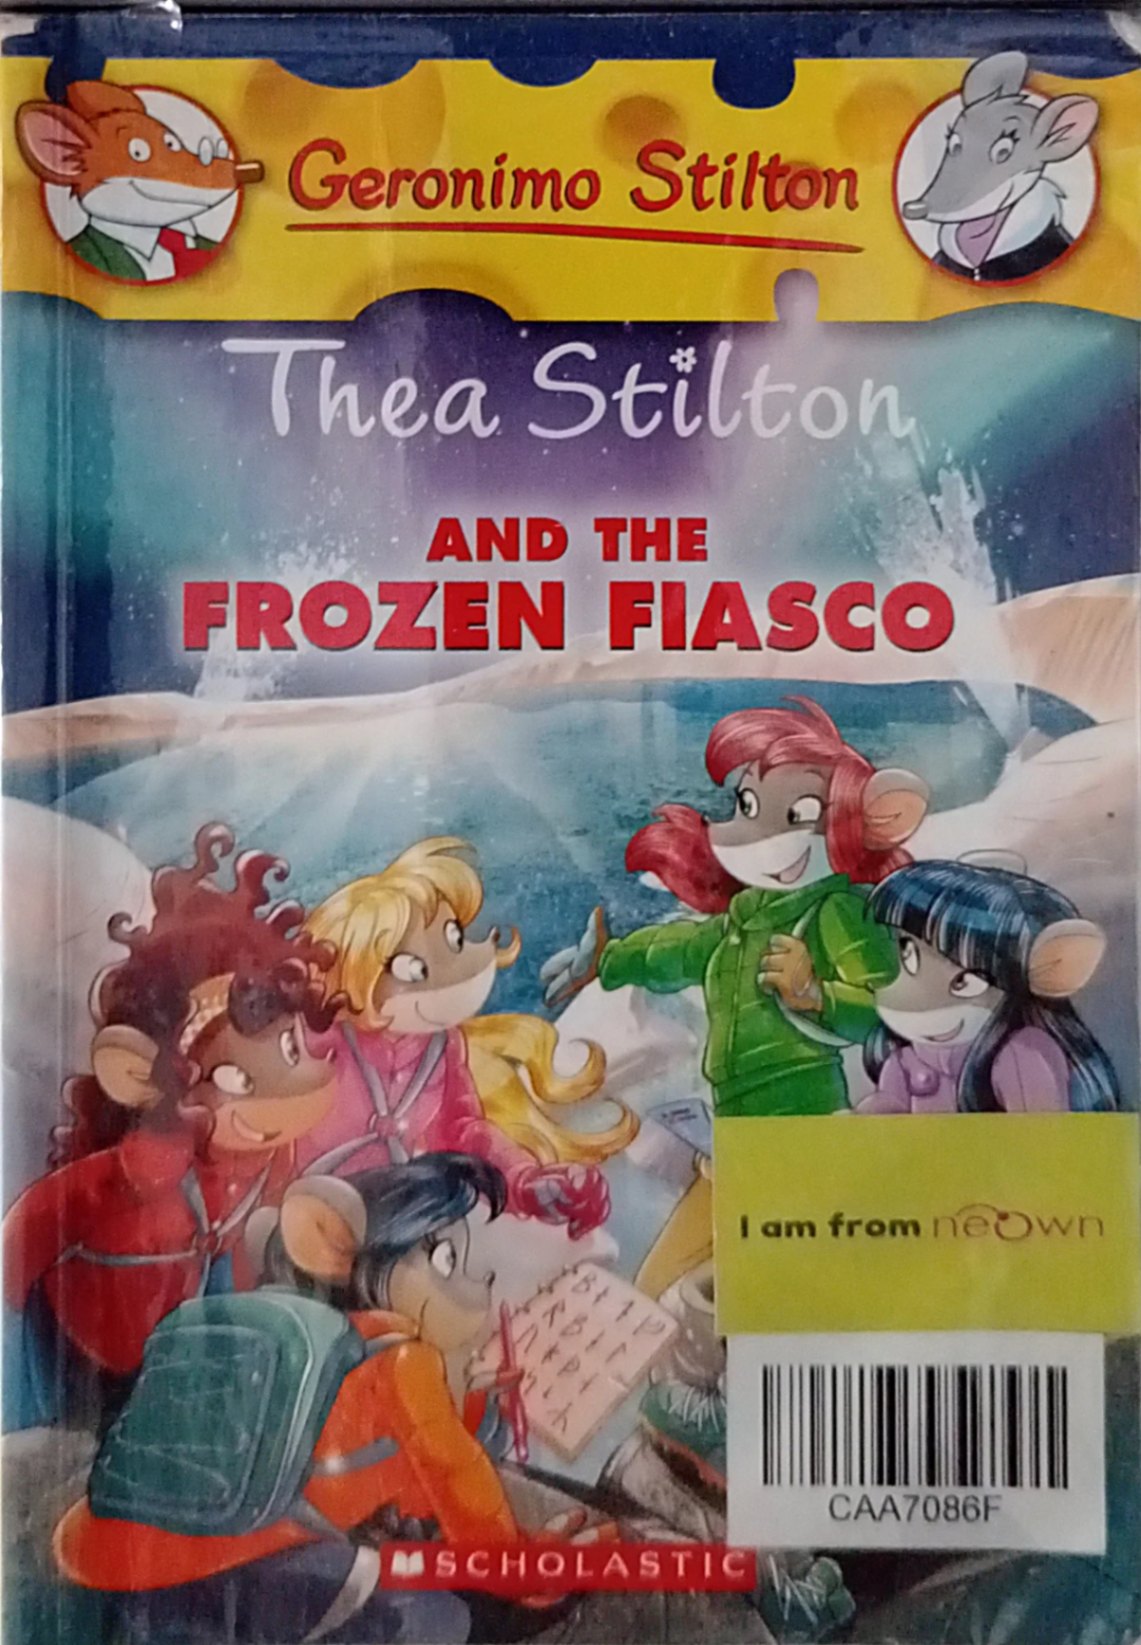 Geronimo Stilton- Thea Stilton and the Frozen Fiasco